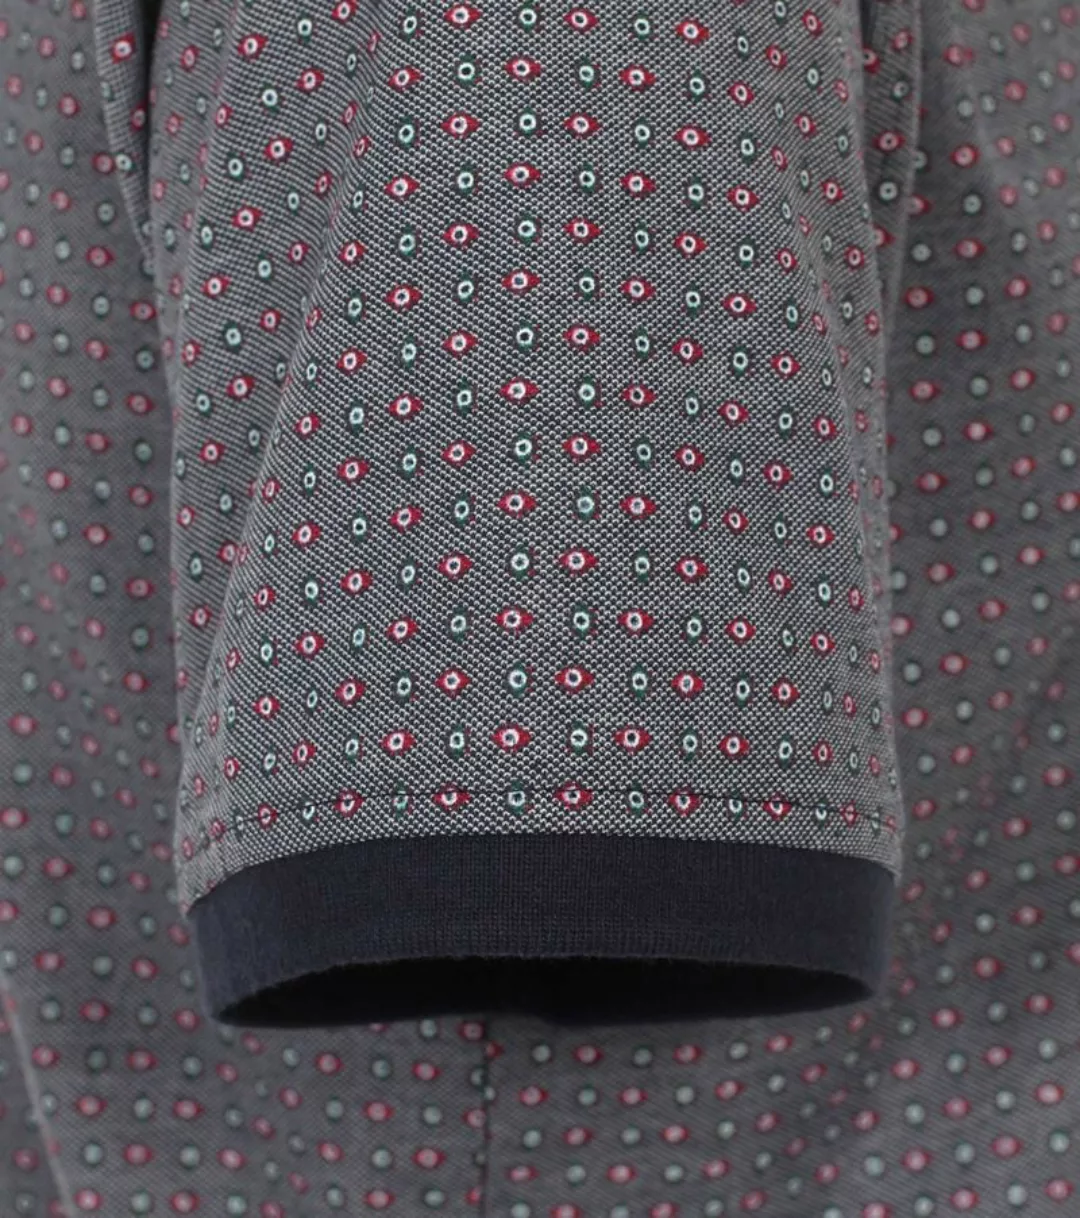 Casa Moda Poloshirt Druck Grau Multicolour - Größe L günstig online kaufen